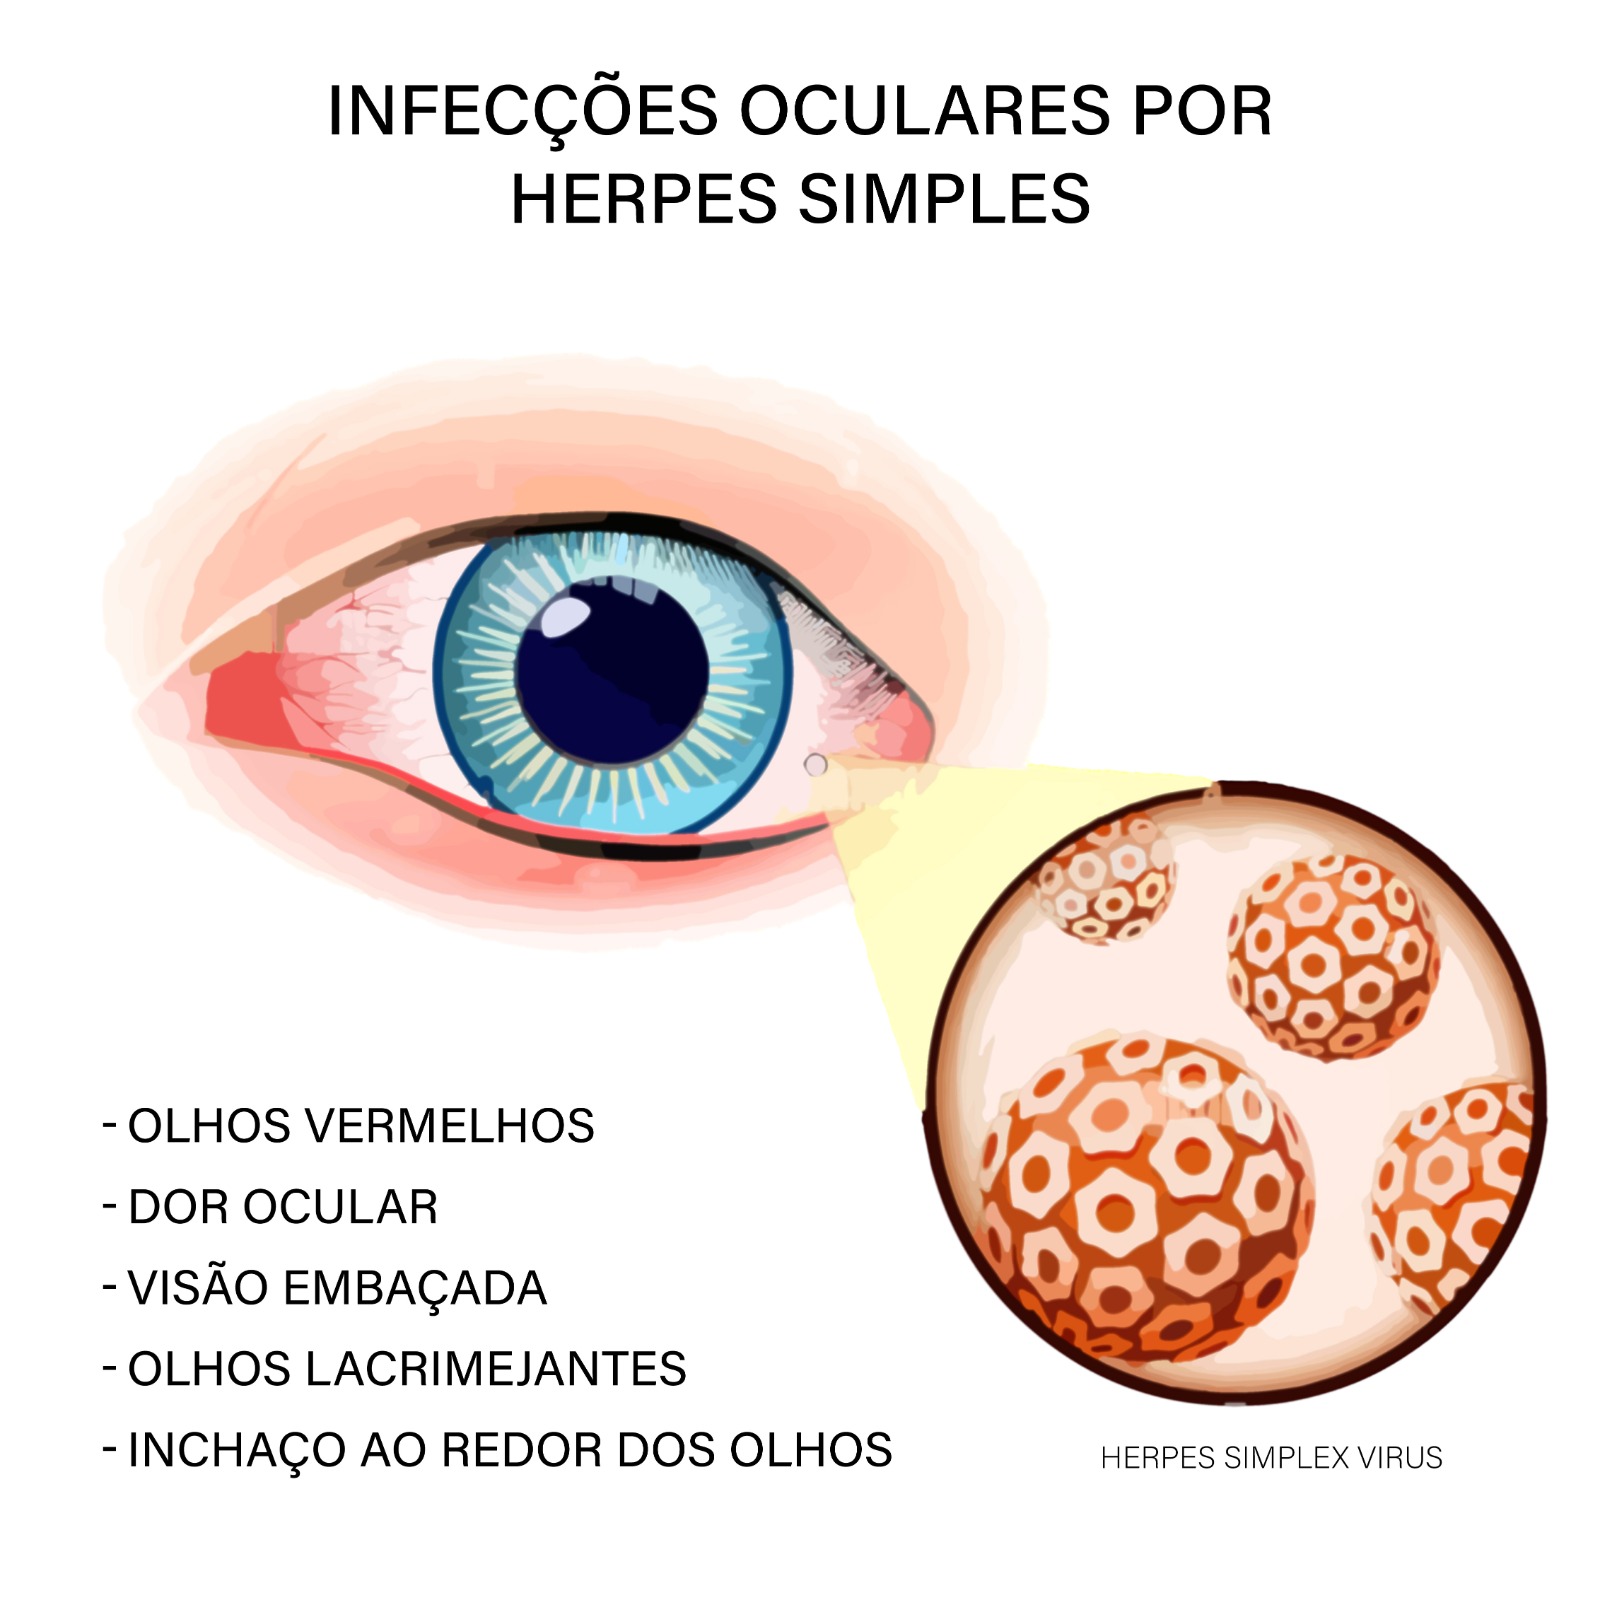 Infecções oculares por Herpes Simples têm tratamento